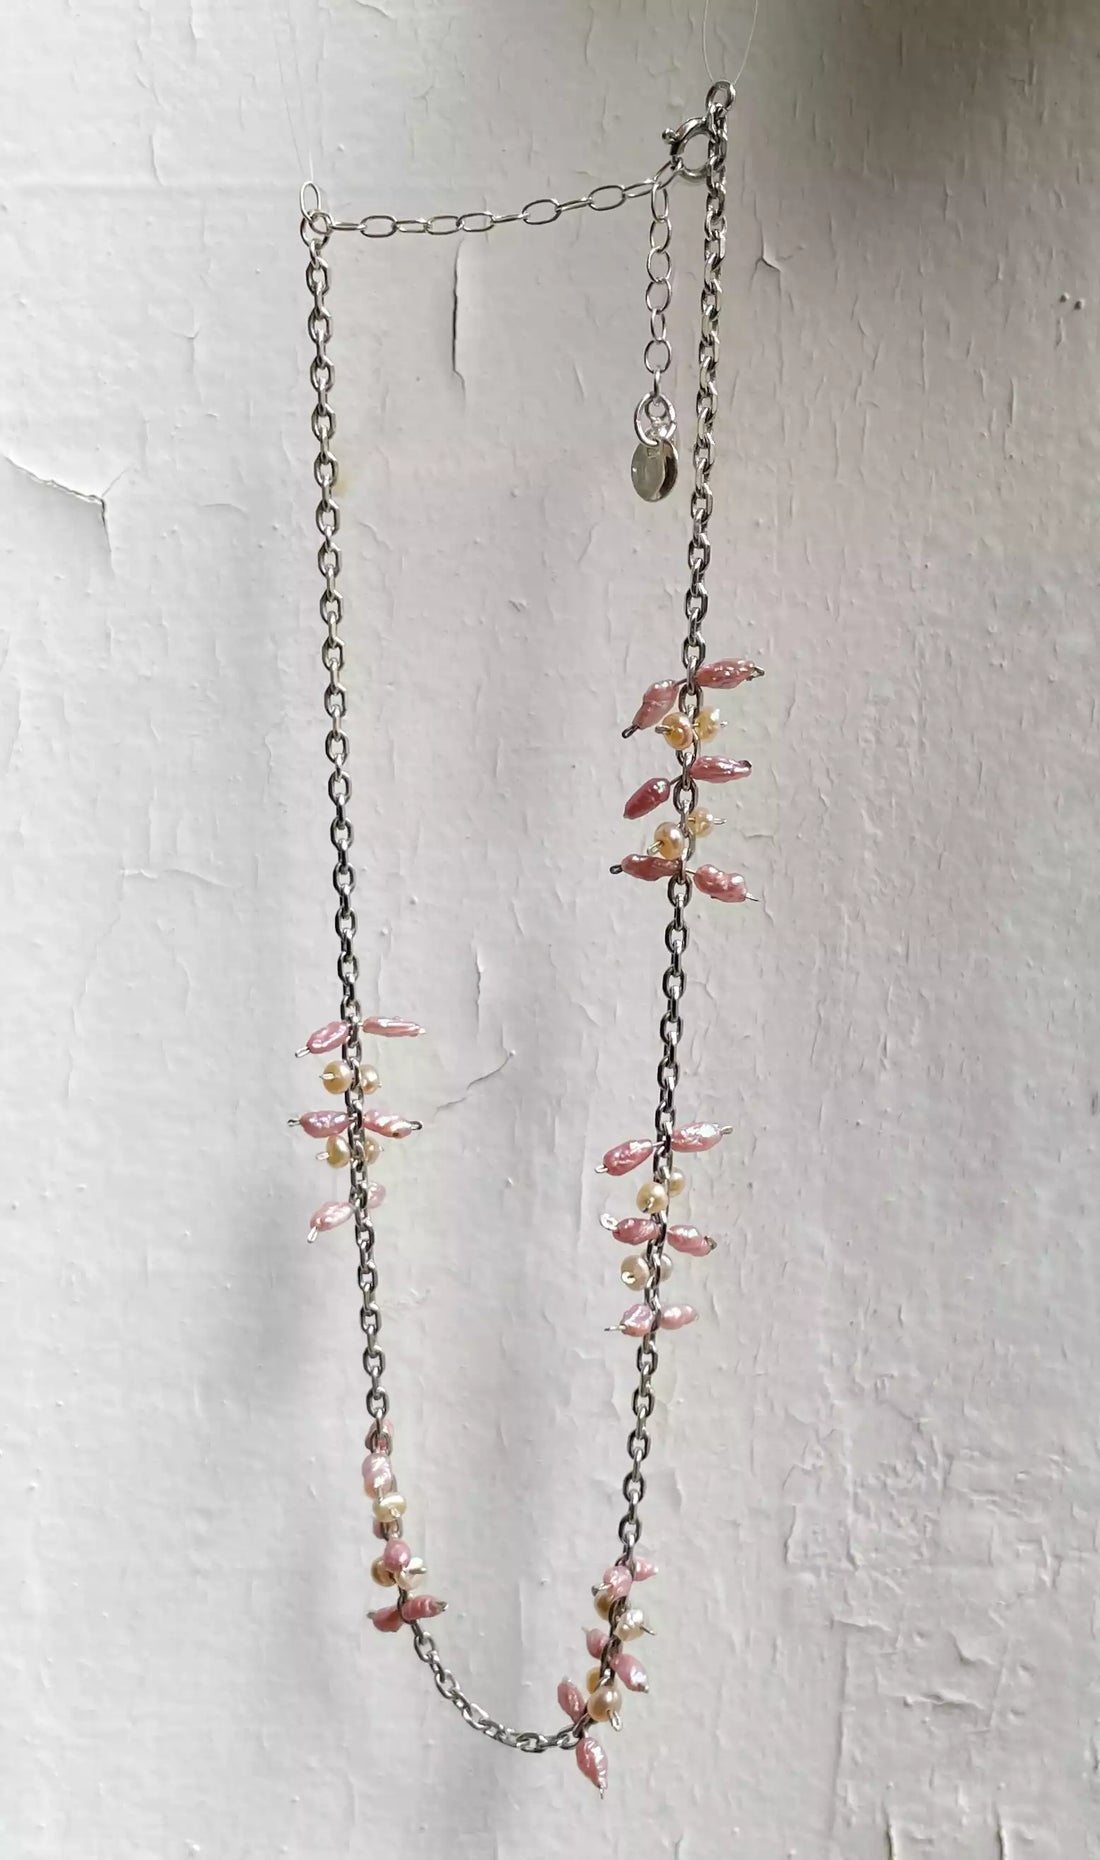 Photo du collier suspendu devant un fond blanc texturé. On voit l'alternance des motifs formés par l'assemblage des perles d'eau douce sur la chaîne en argent.